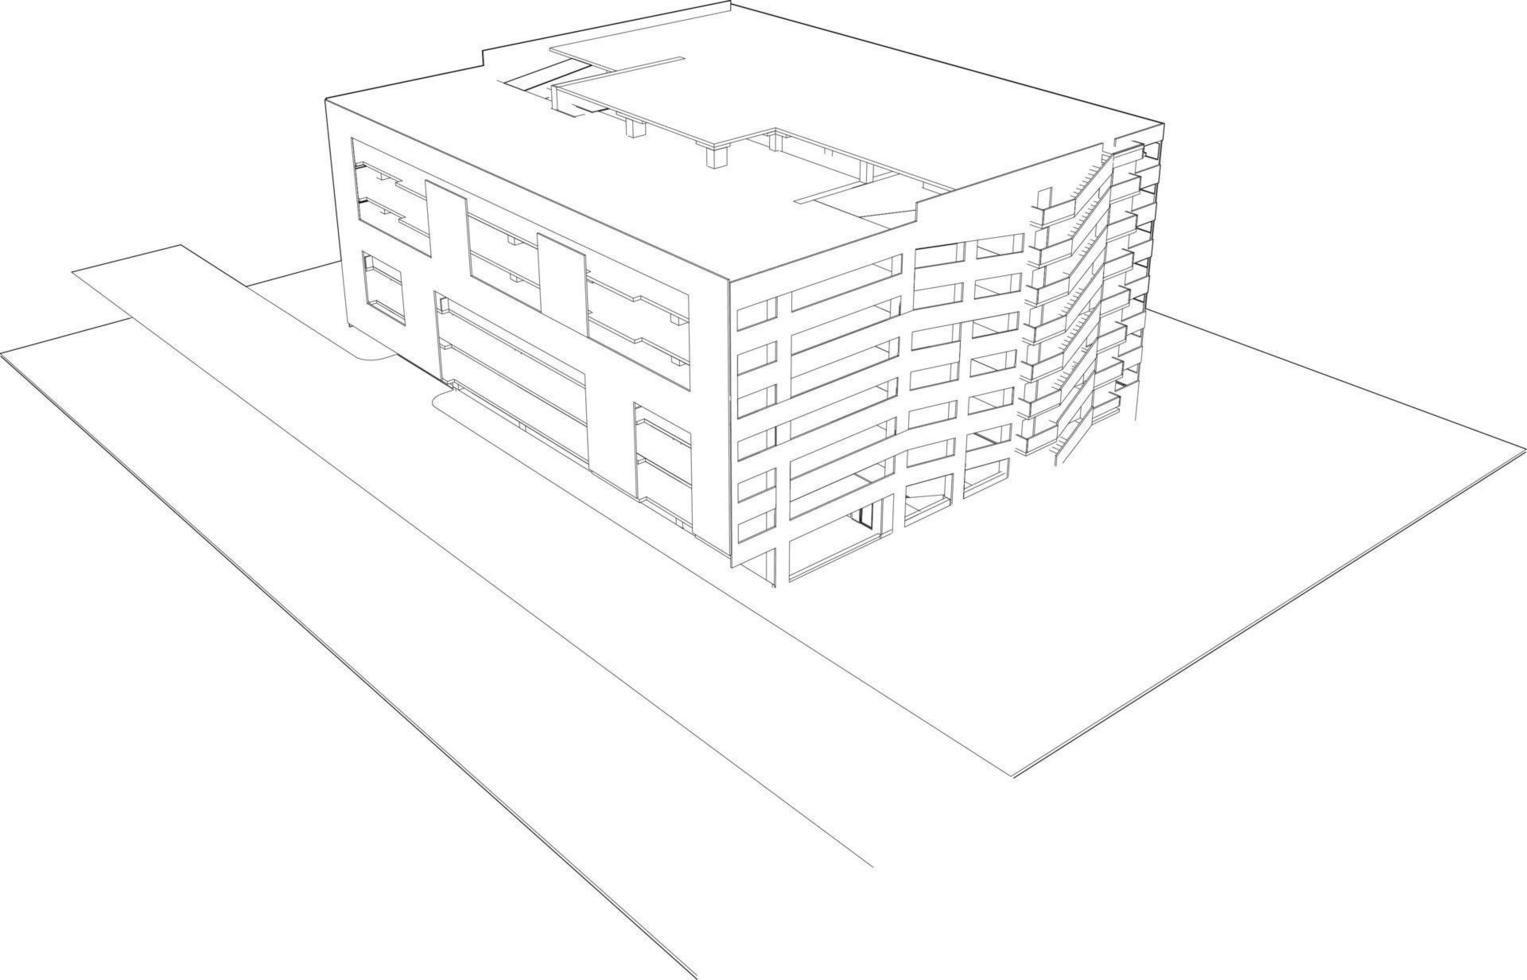 ilustração 3D do projeto de construção vetor